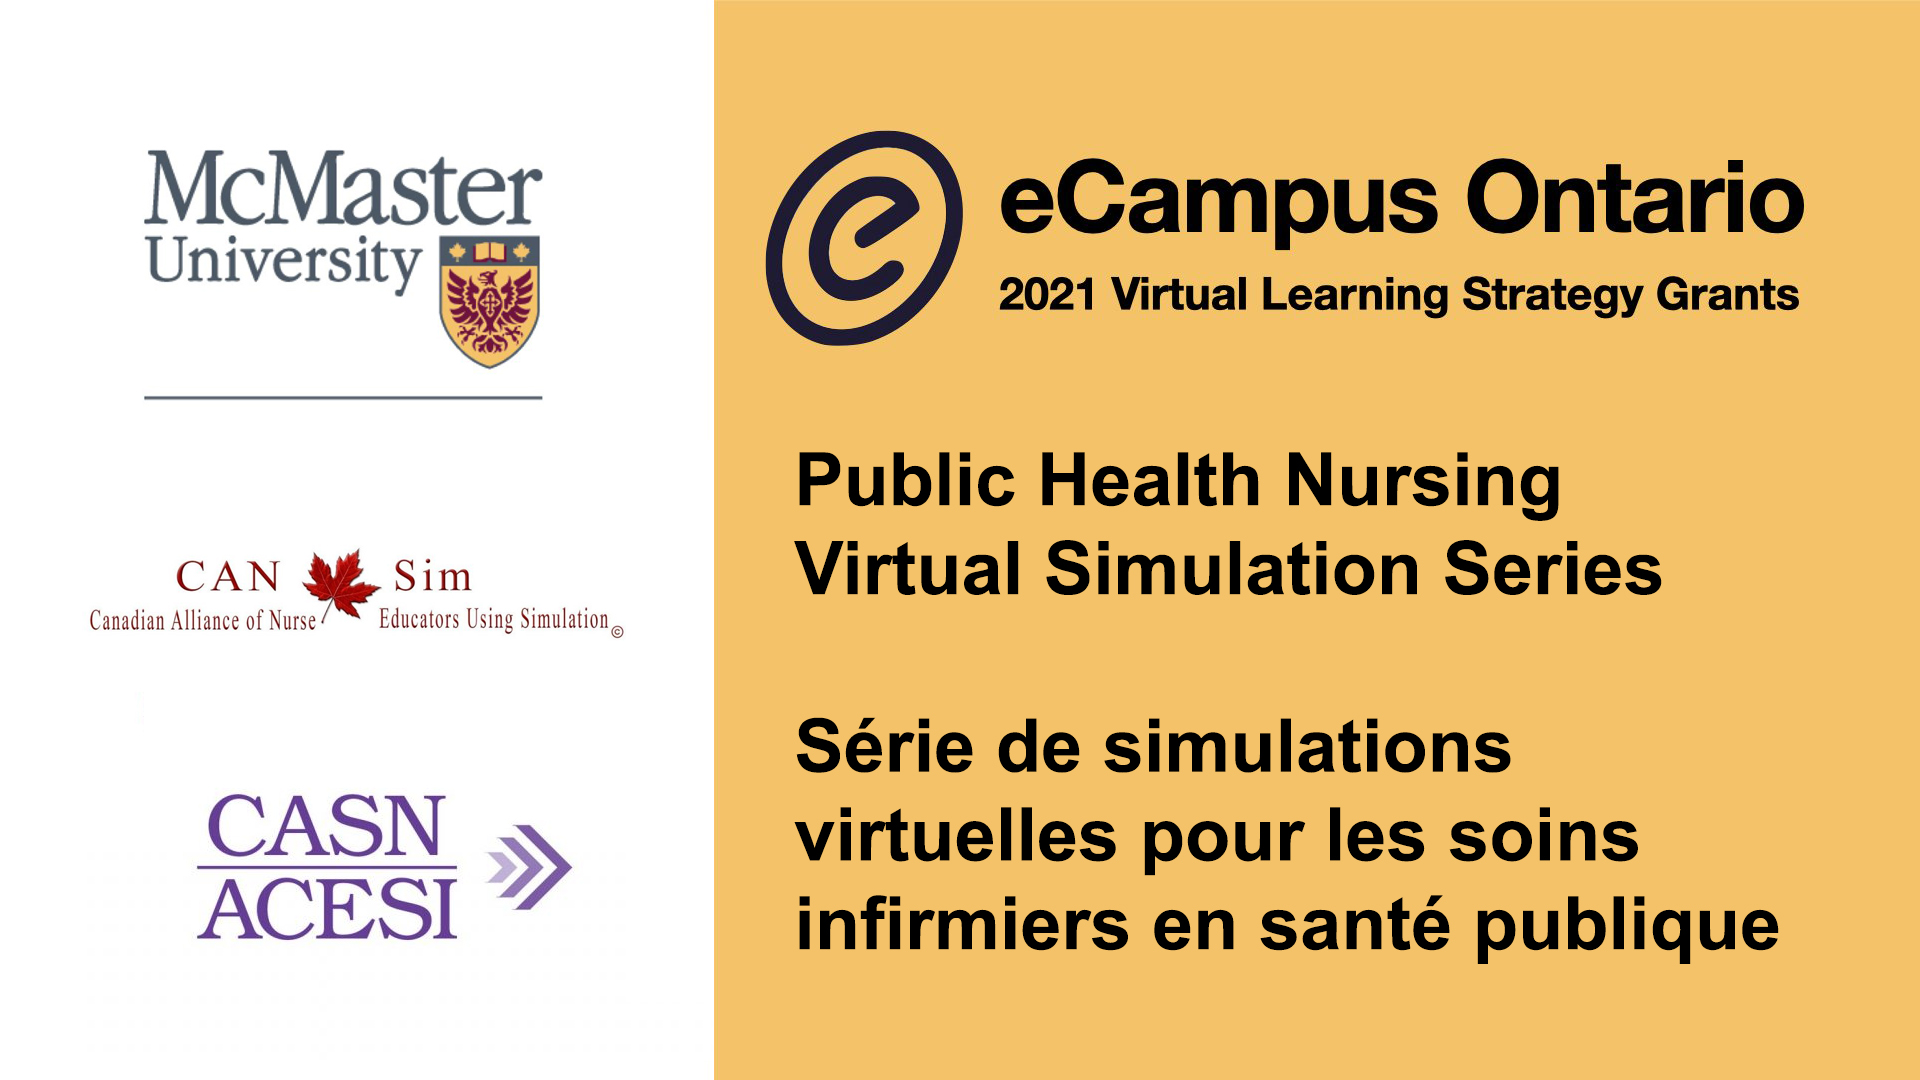 eCampus Ontario finance la création d’une série de simulations virtuelles pour les soins infirmiers en santé publique